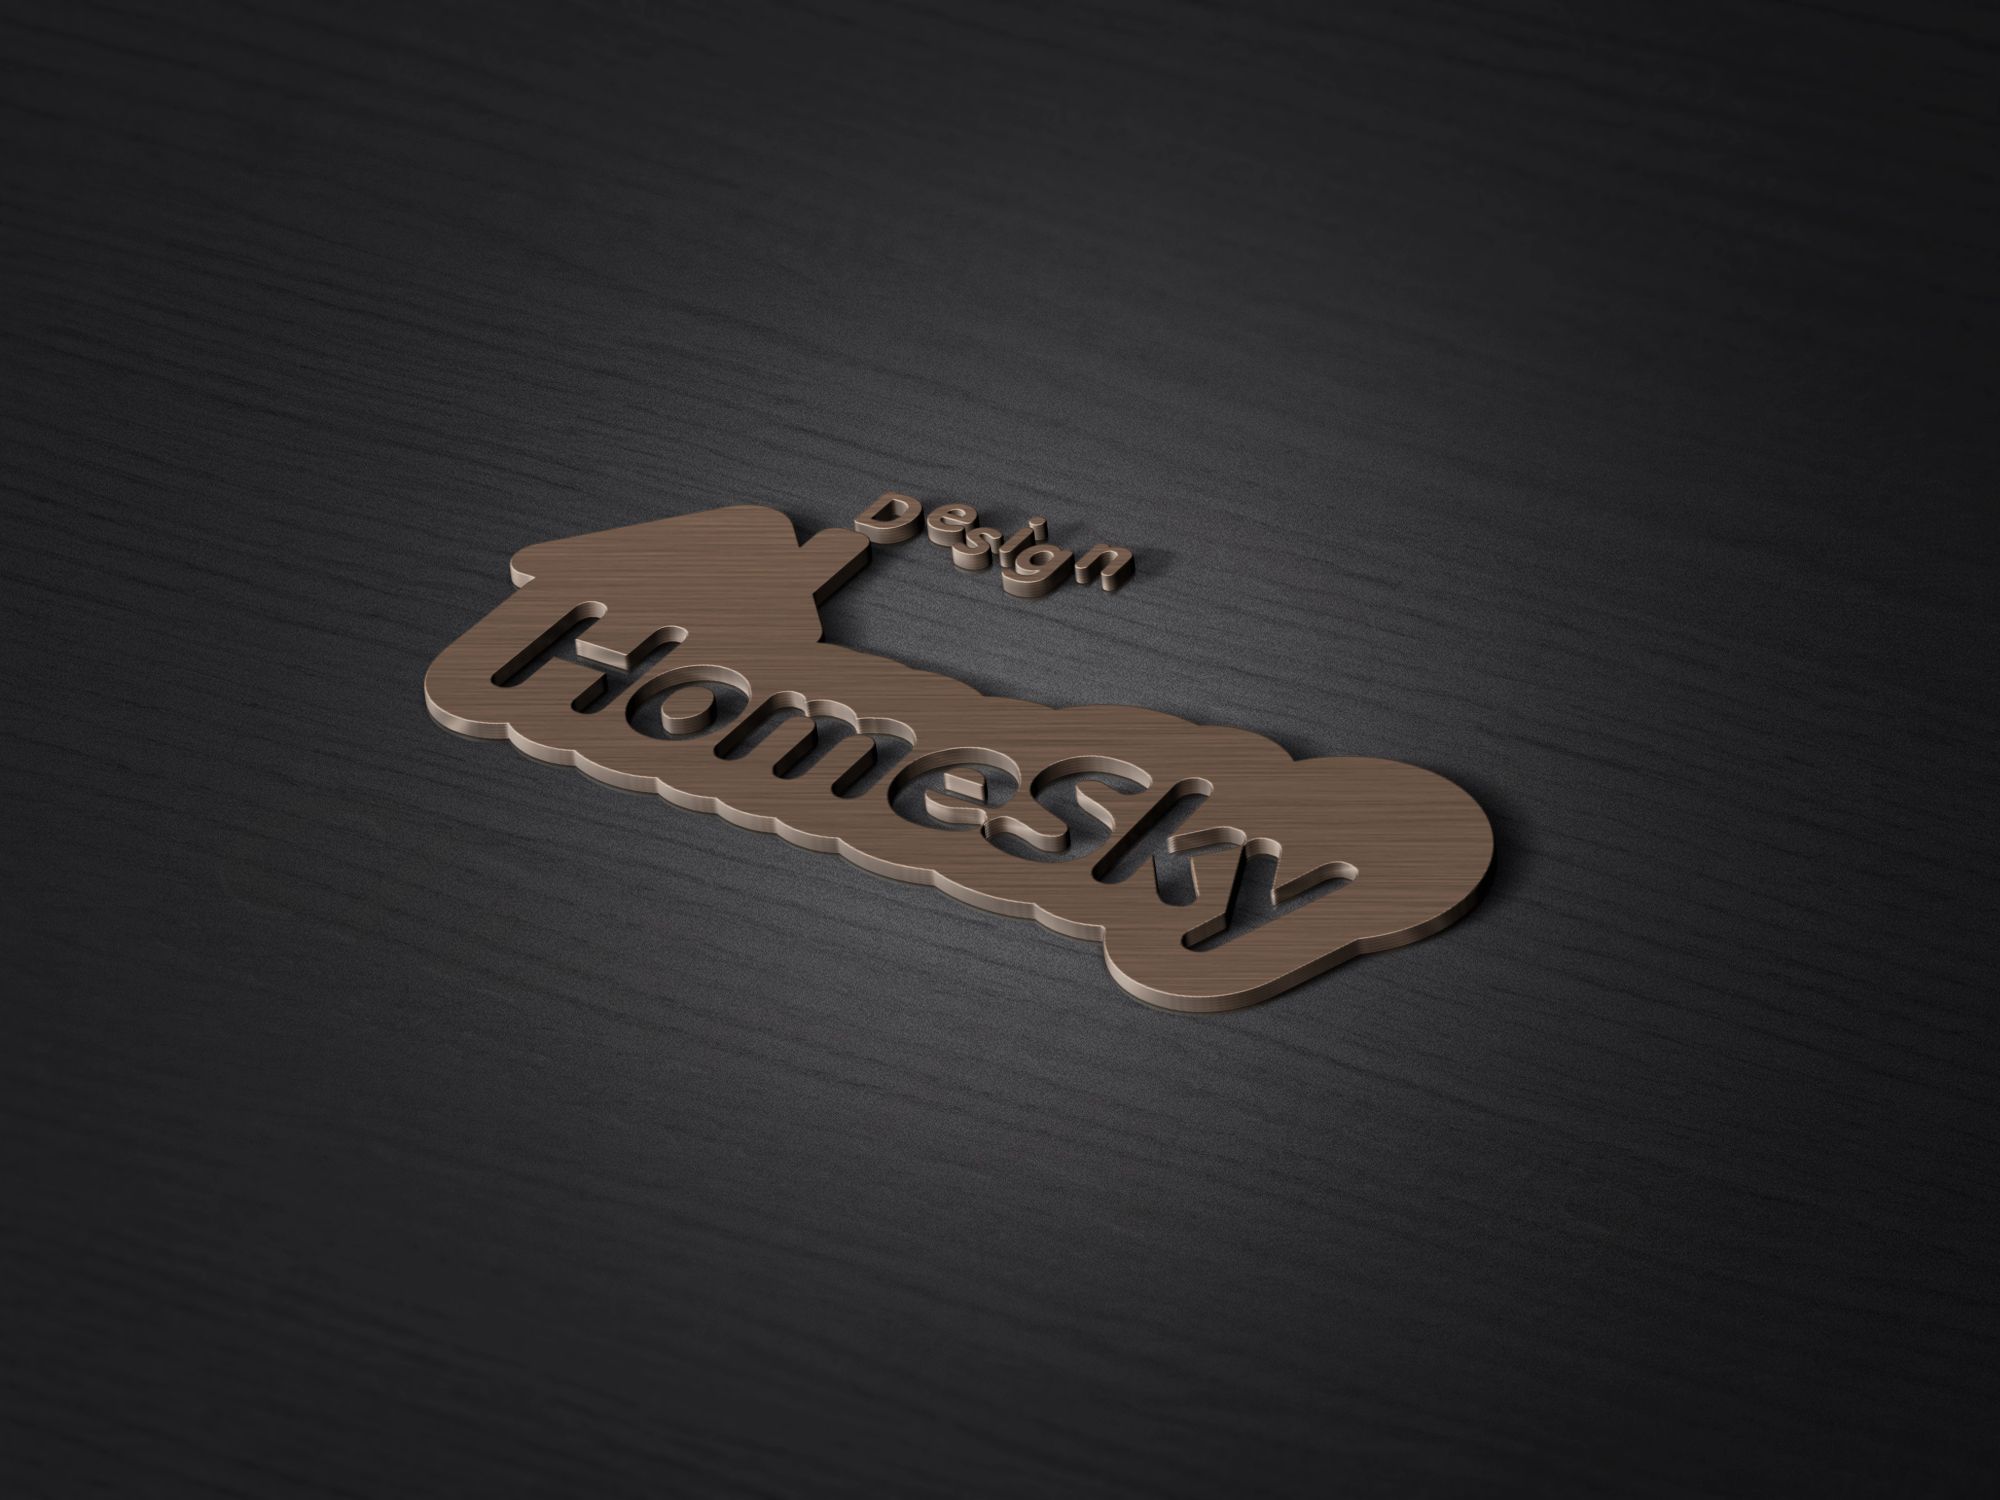 Логотип для HomeSky Design  - дизайнер serz4868